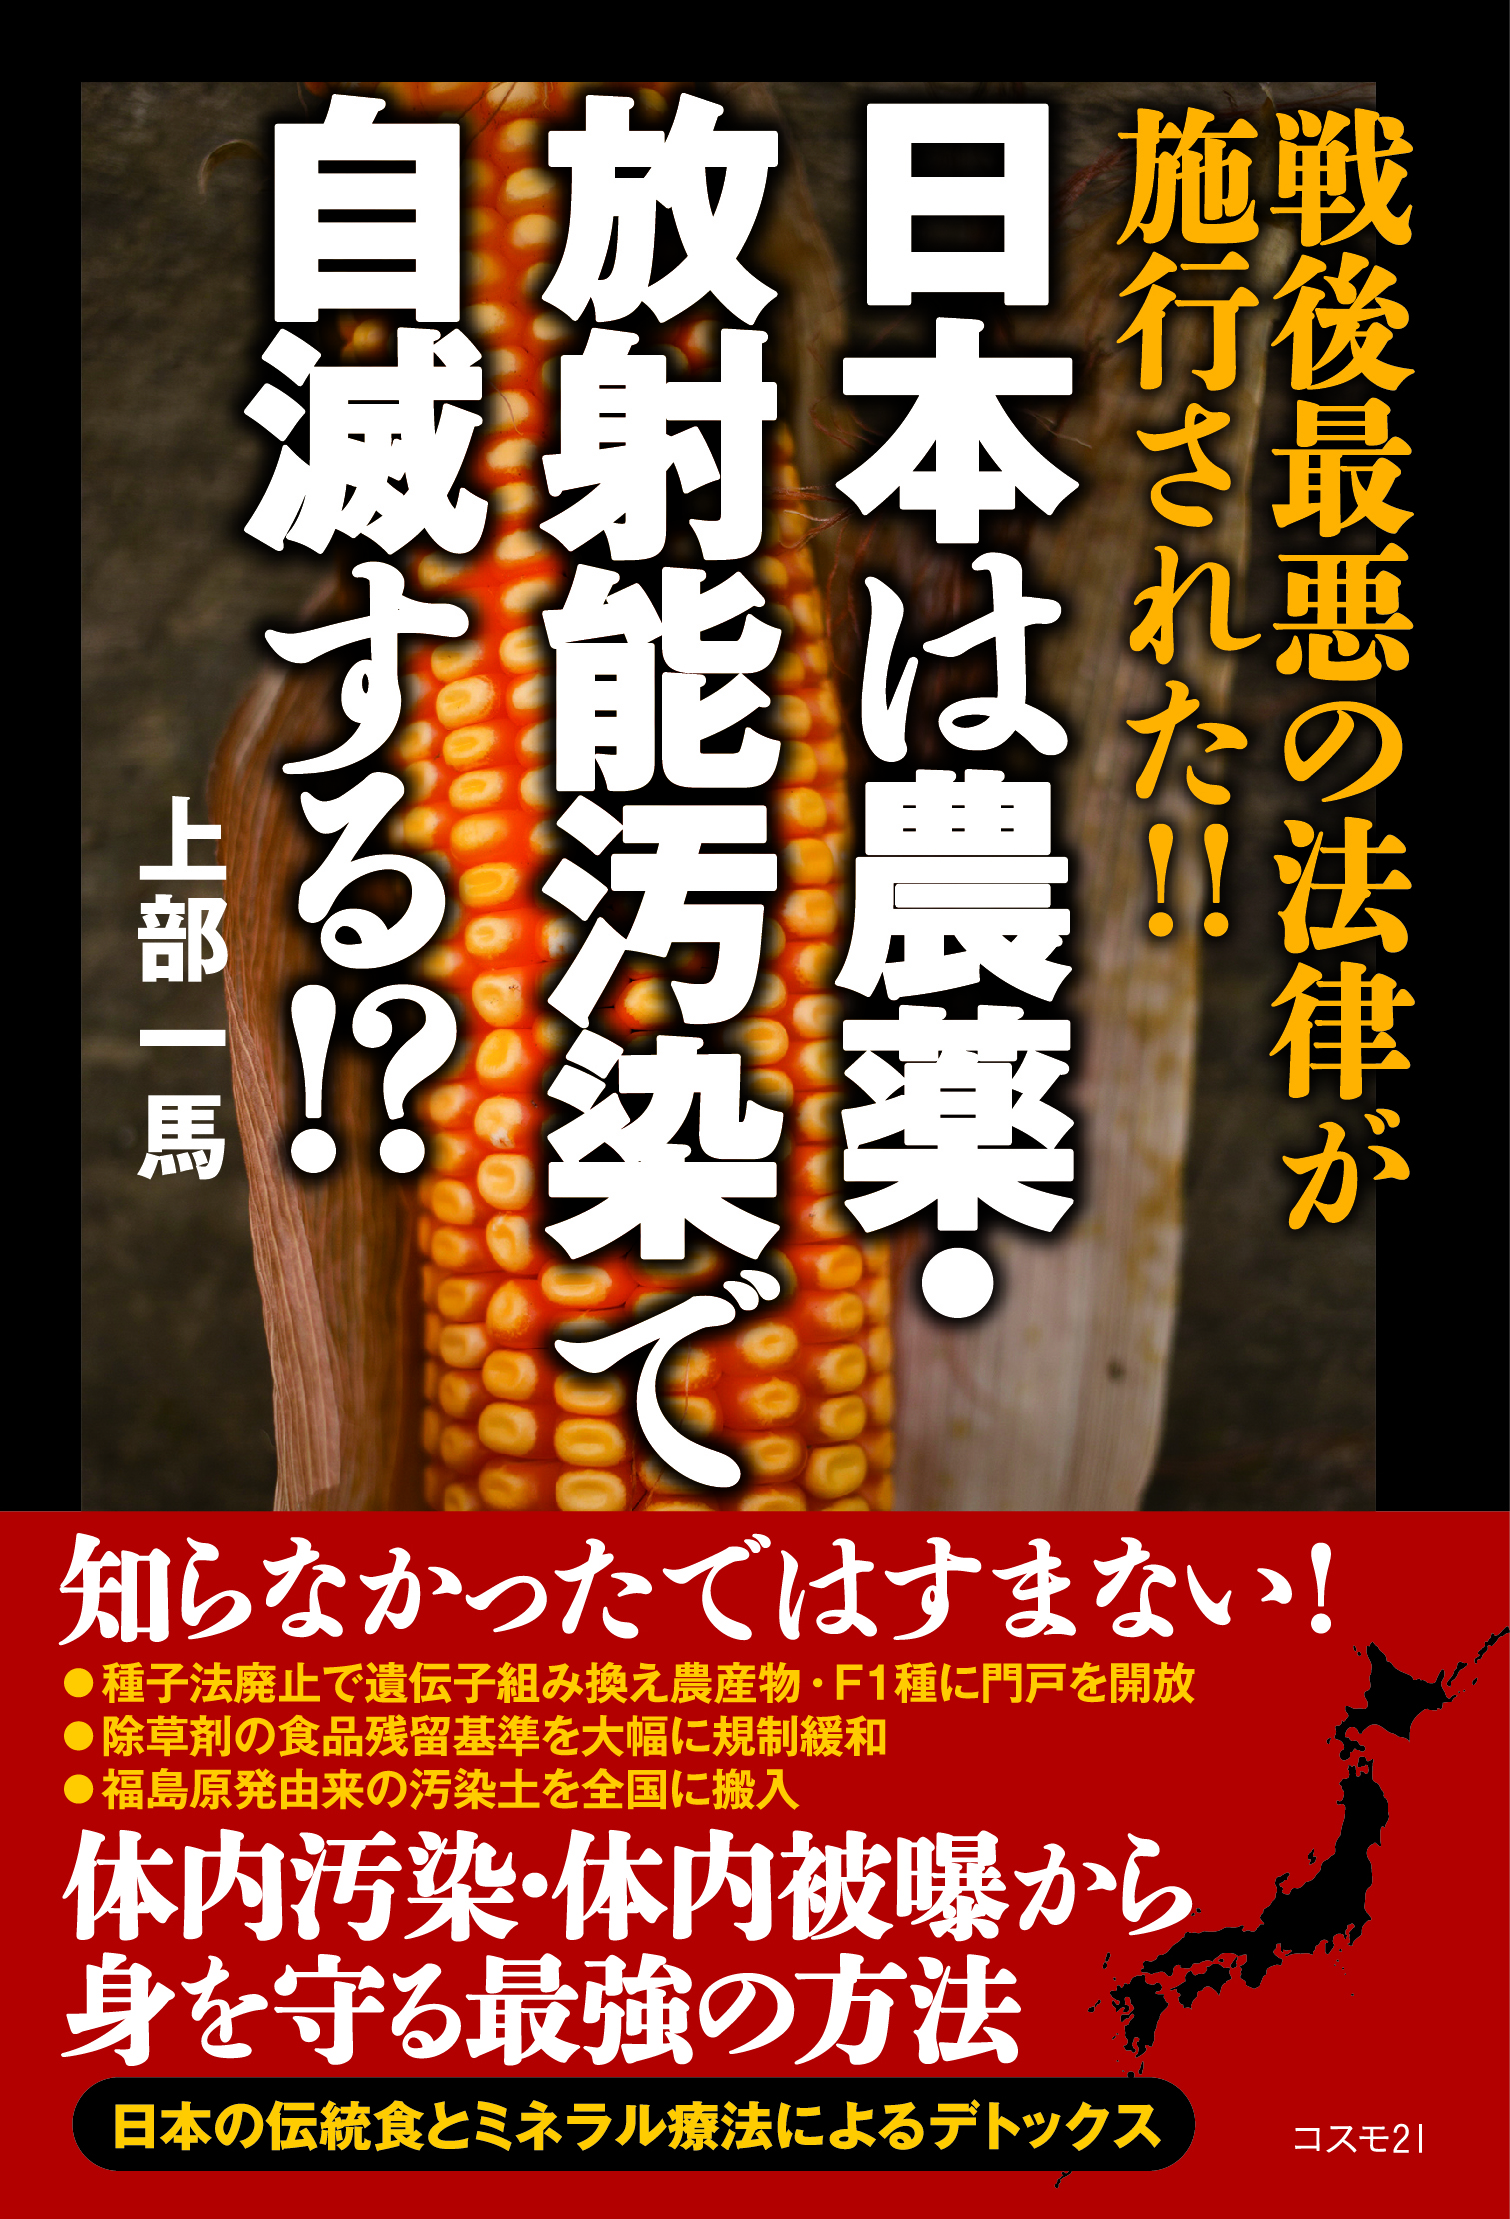 日本は農薬・放射能汚染で自滅する!?の商品画像